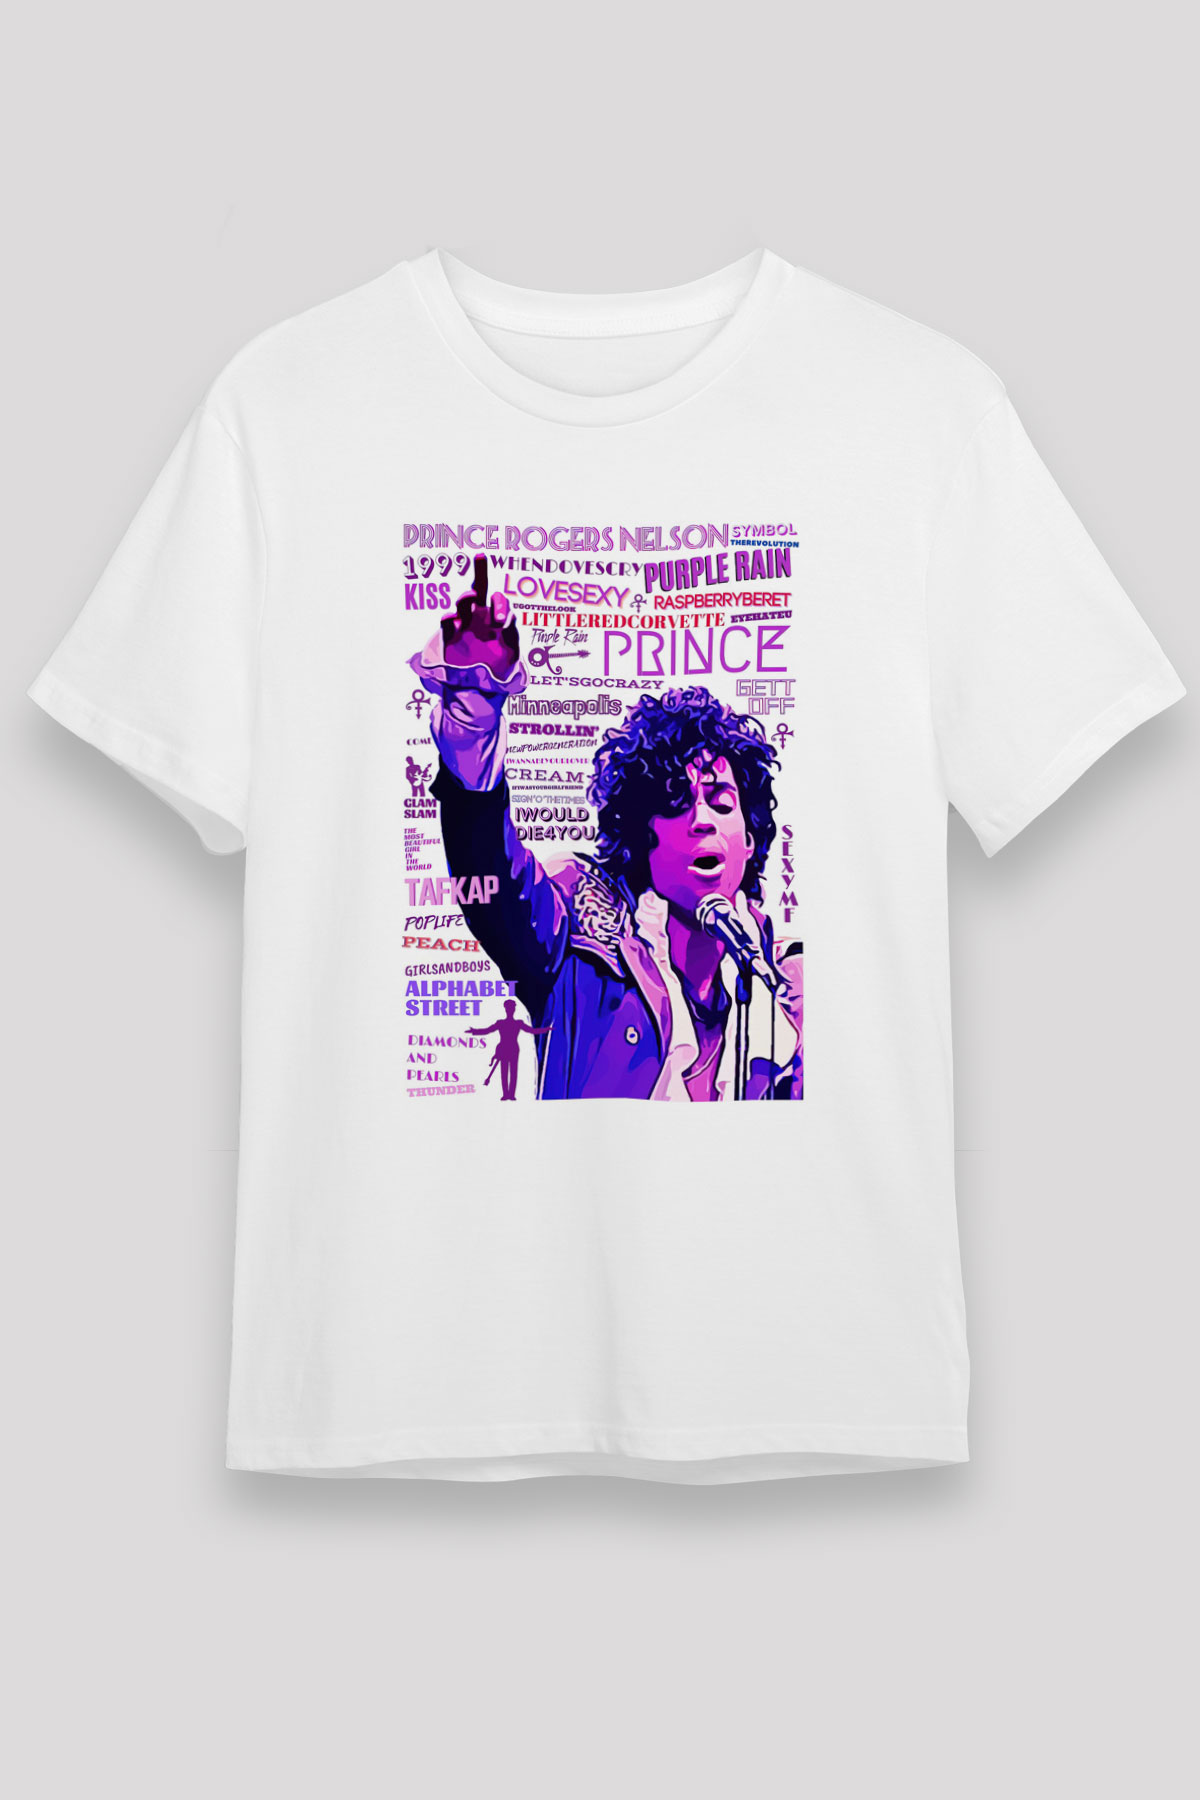 Prince T shirt,Music Band,Unisex Tshirt 05